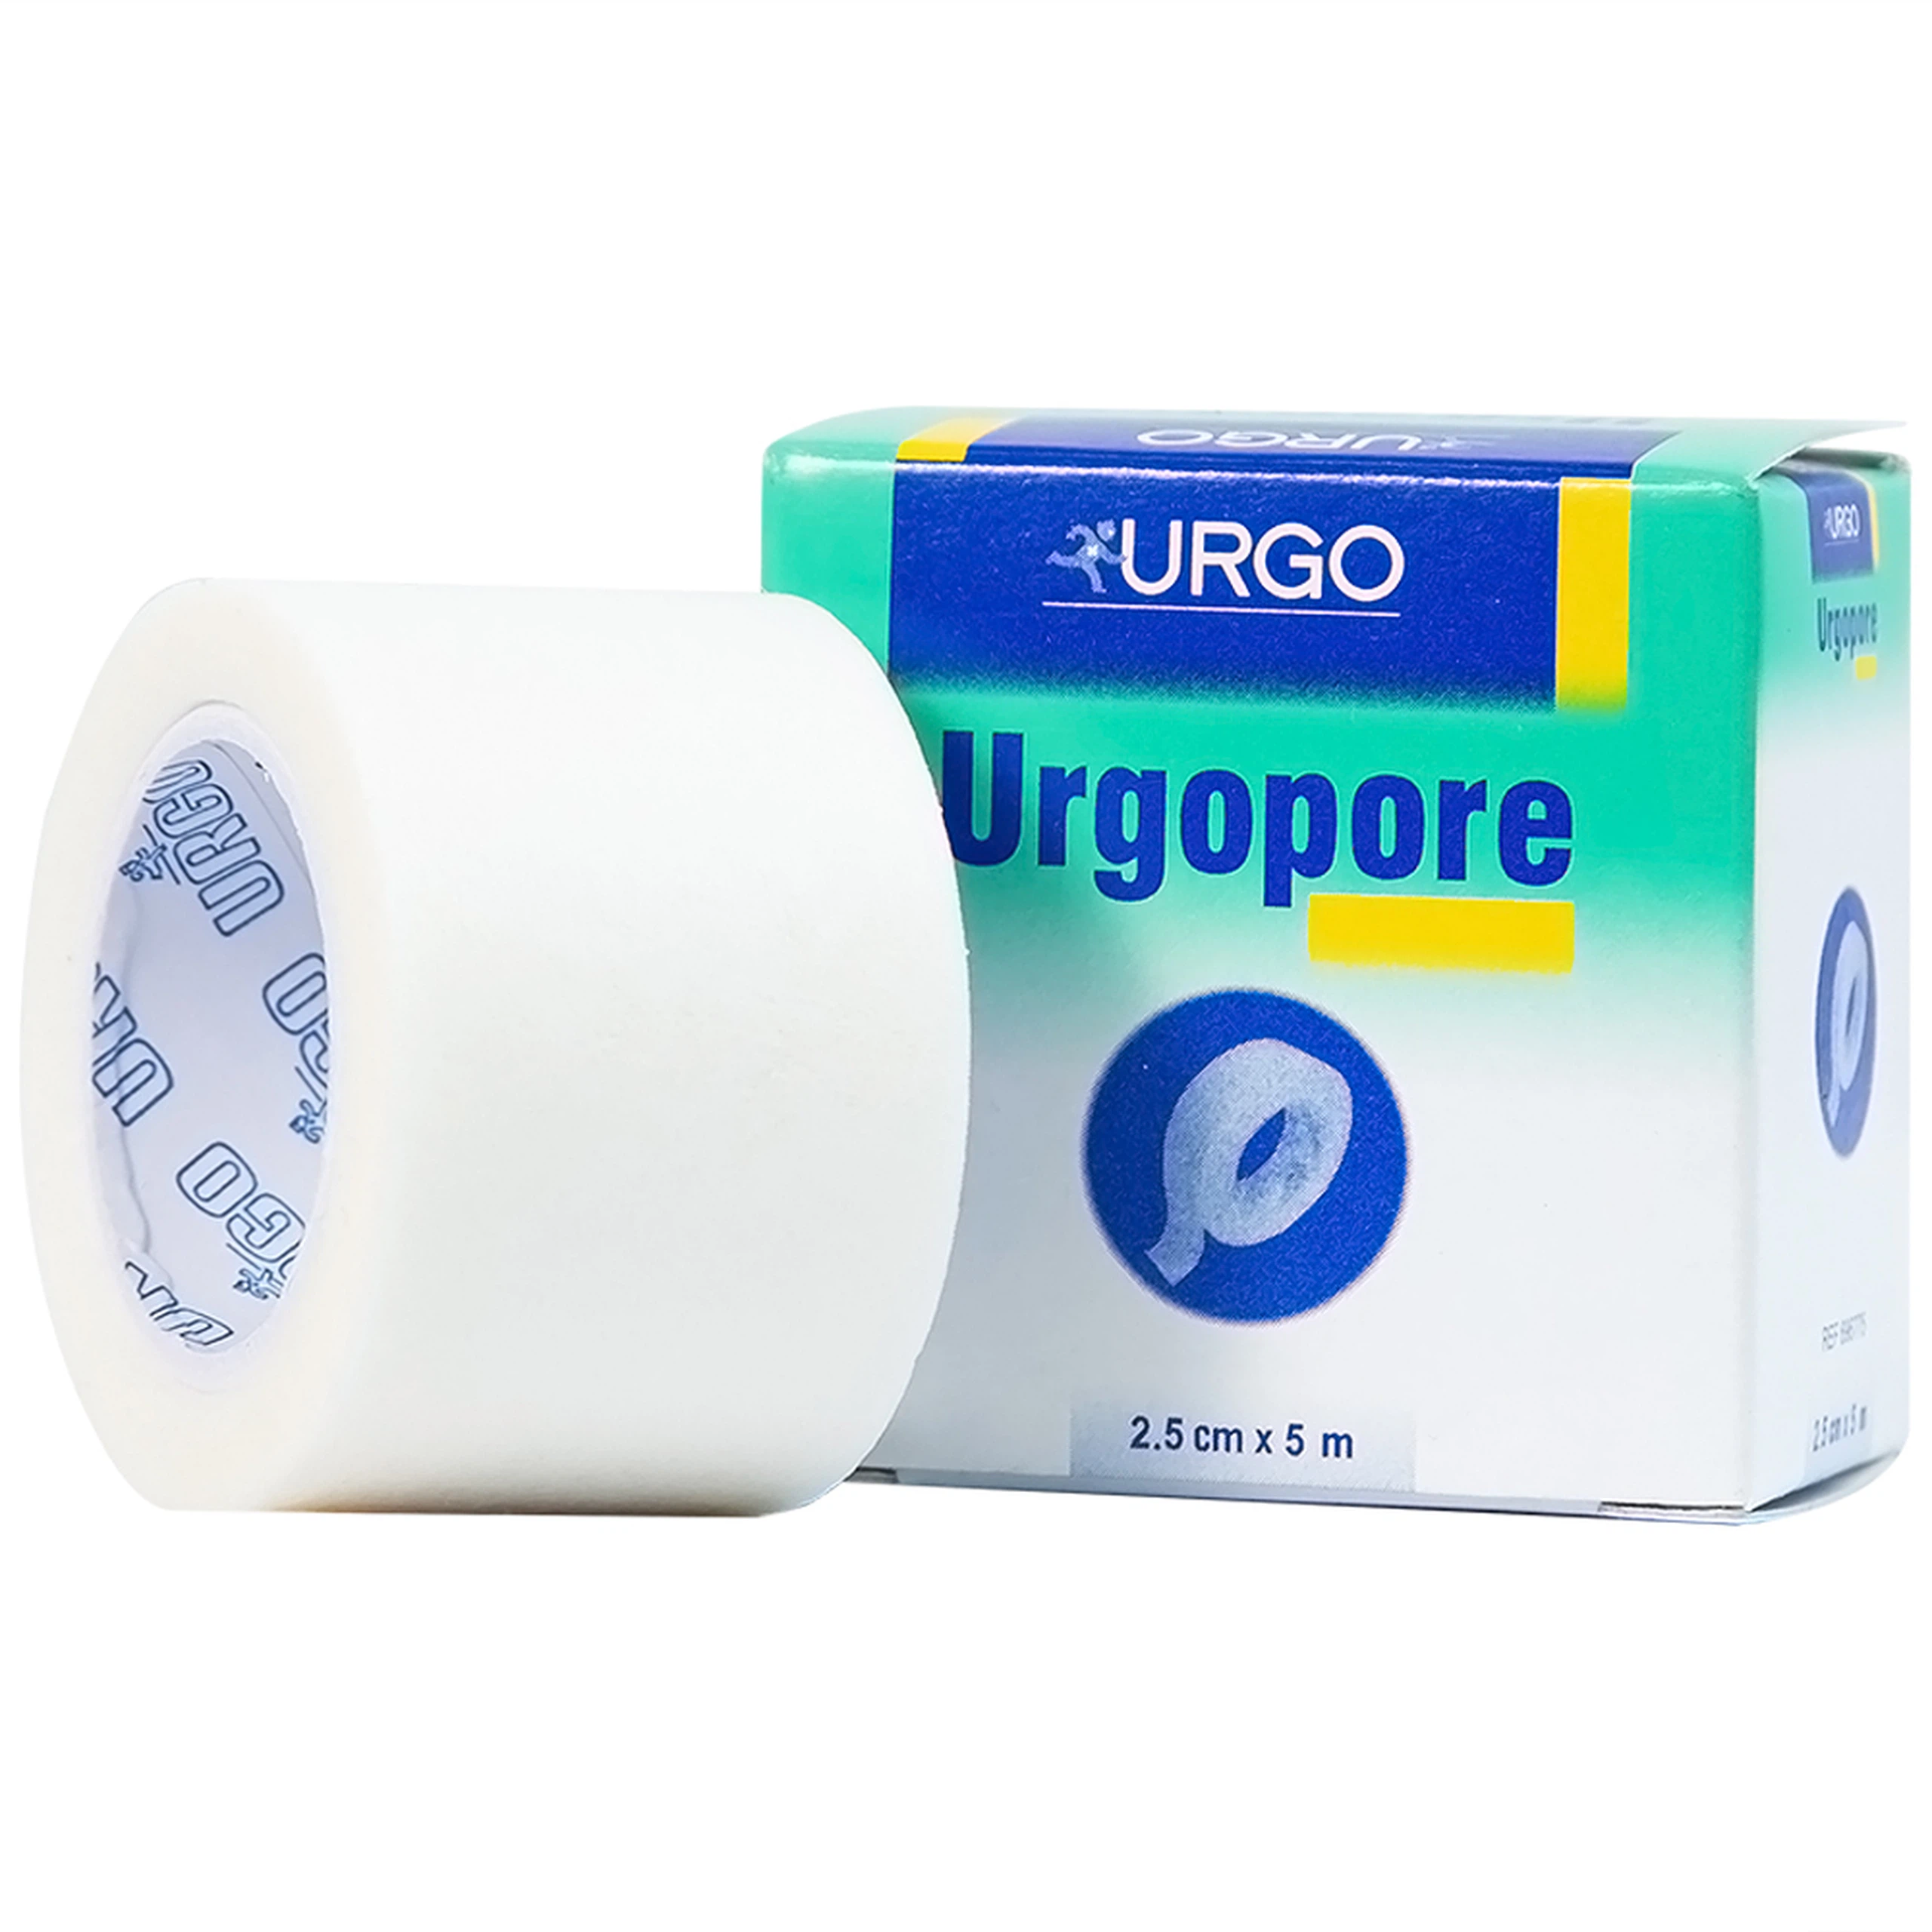 Băng keo giấy y tế Urgopore size 2.5cm x 5m thông thoáng cho da nhạy cảm, giúp kềm giữ nhanh, chắc chắn